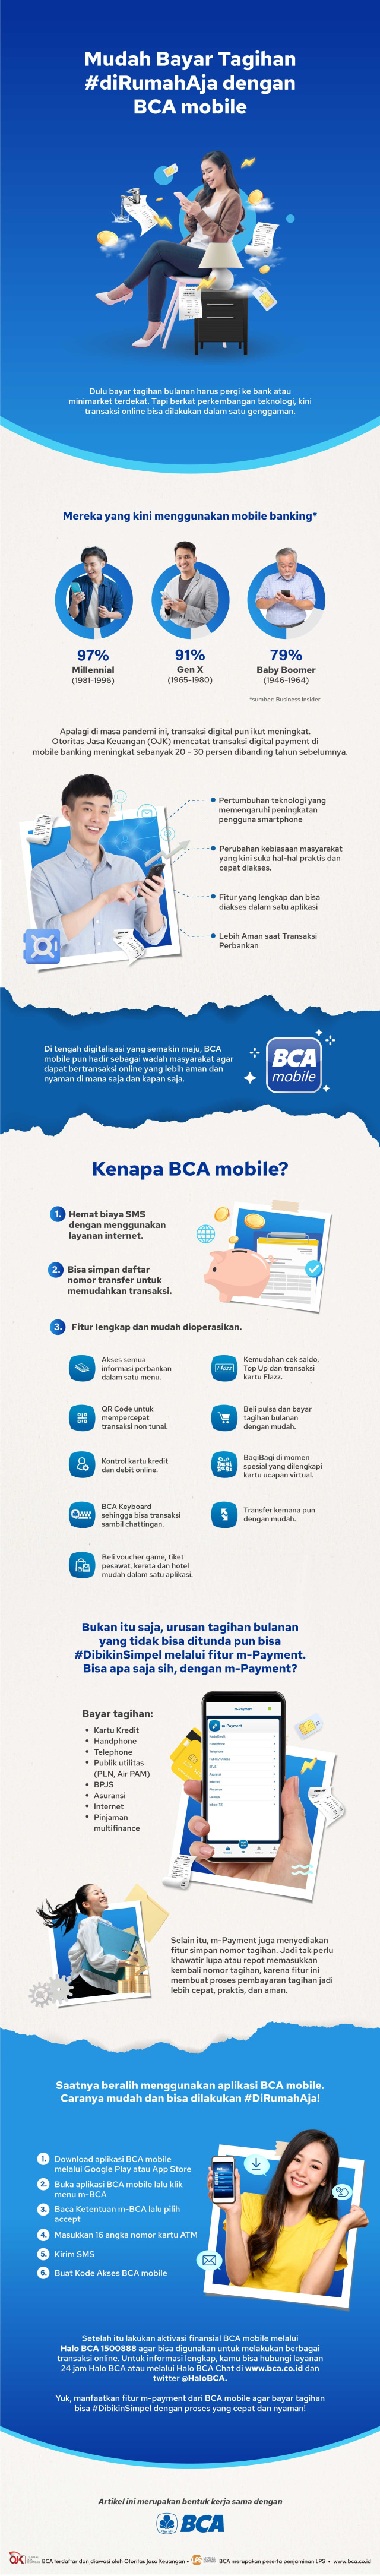 m-Payment BCA mobile bisa jadi solusi bayar tagihan agar bisa #DibikinSimpel. Foto: kumparan/Anisti Fakhirah.